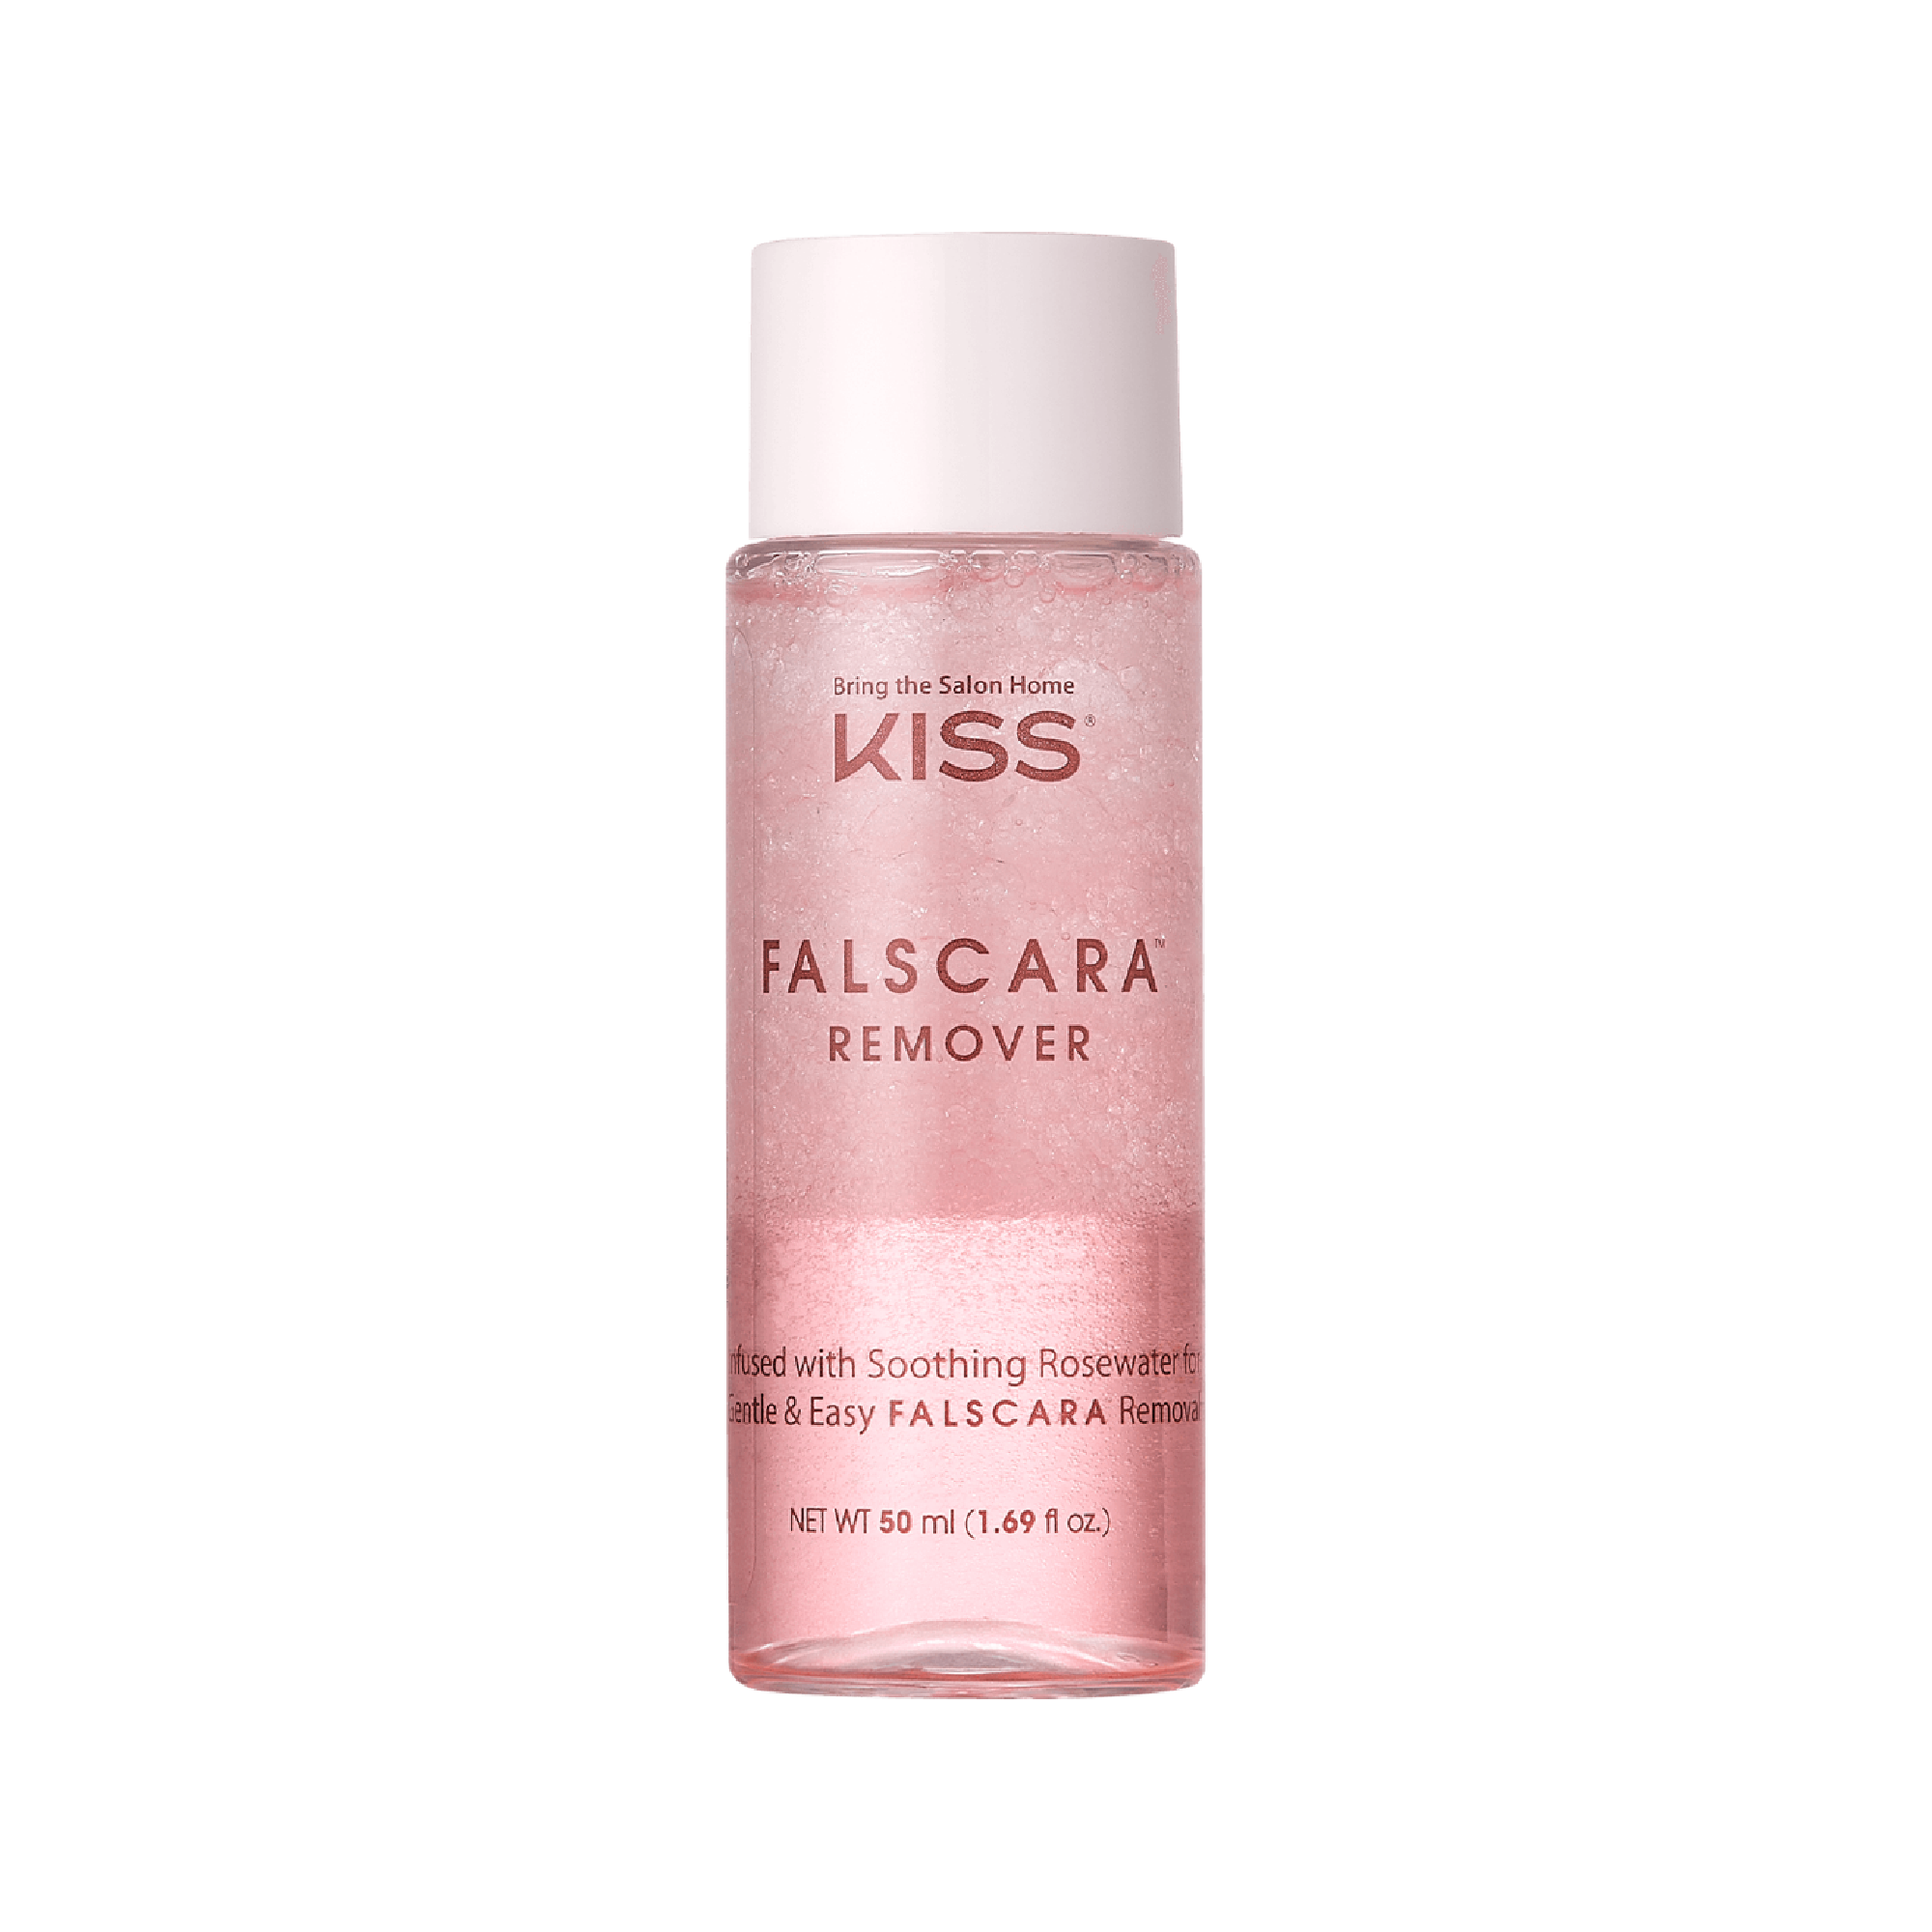 KISS Falscara Eyelash Remover